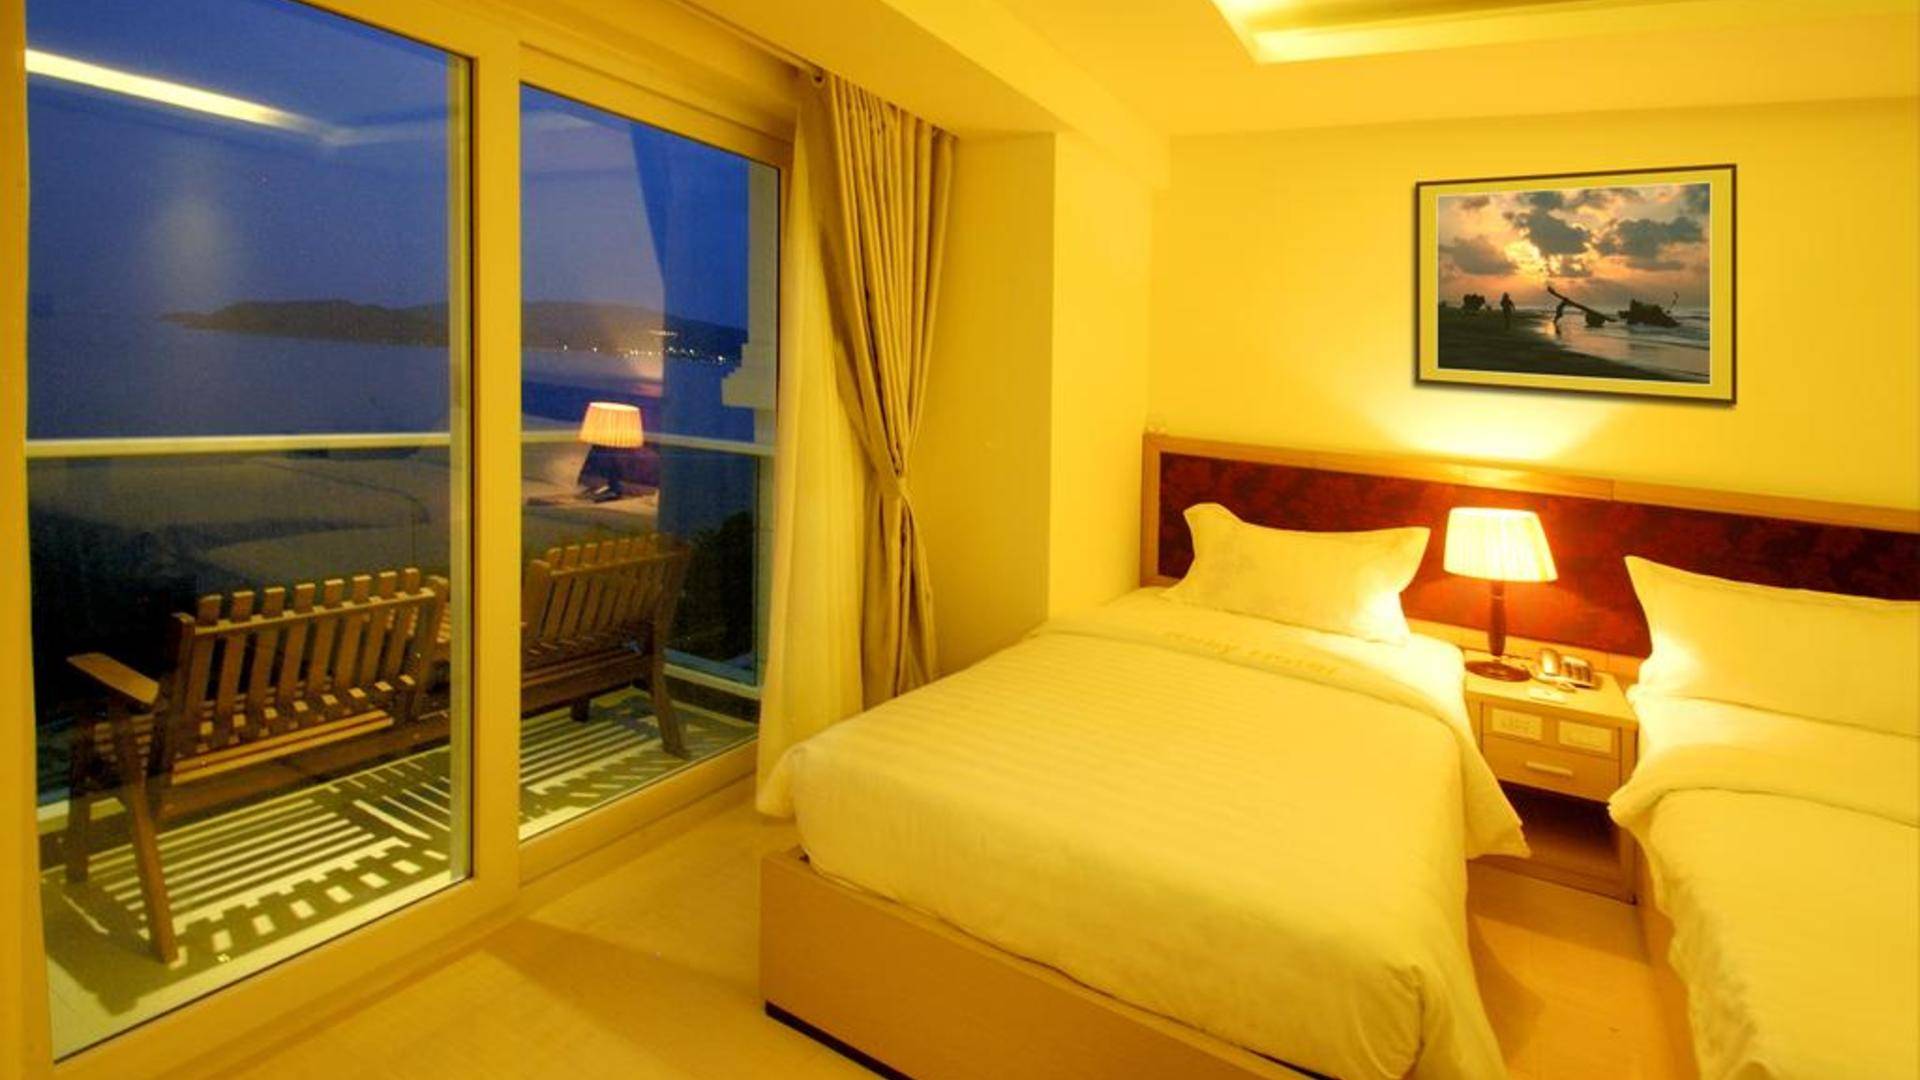 Отель ruby hotel 2*, нячанг, вьетнам - описание, фото, отзывы | туры в отель ruby hotel 2* со скидкой до 5%. продажа путевок в г. мытищи, королев, пушкино - rcc-travel.ru